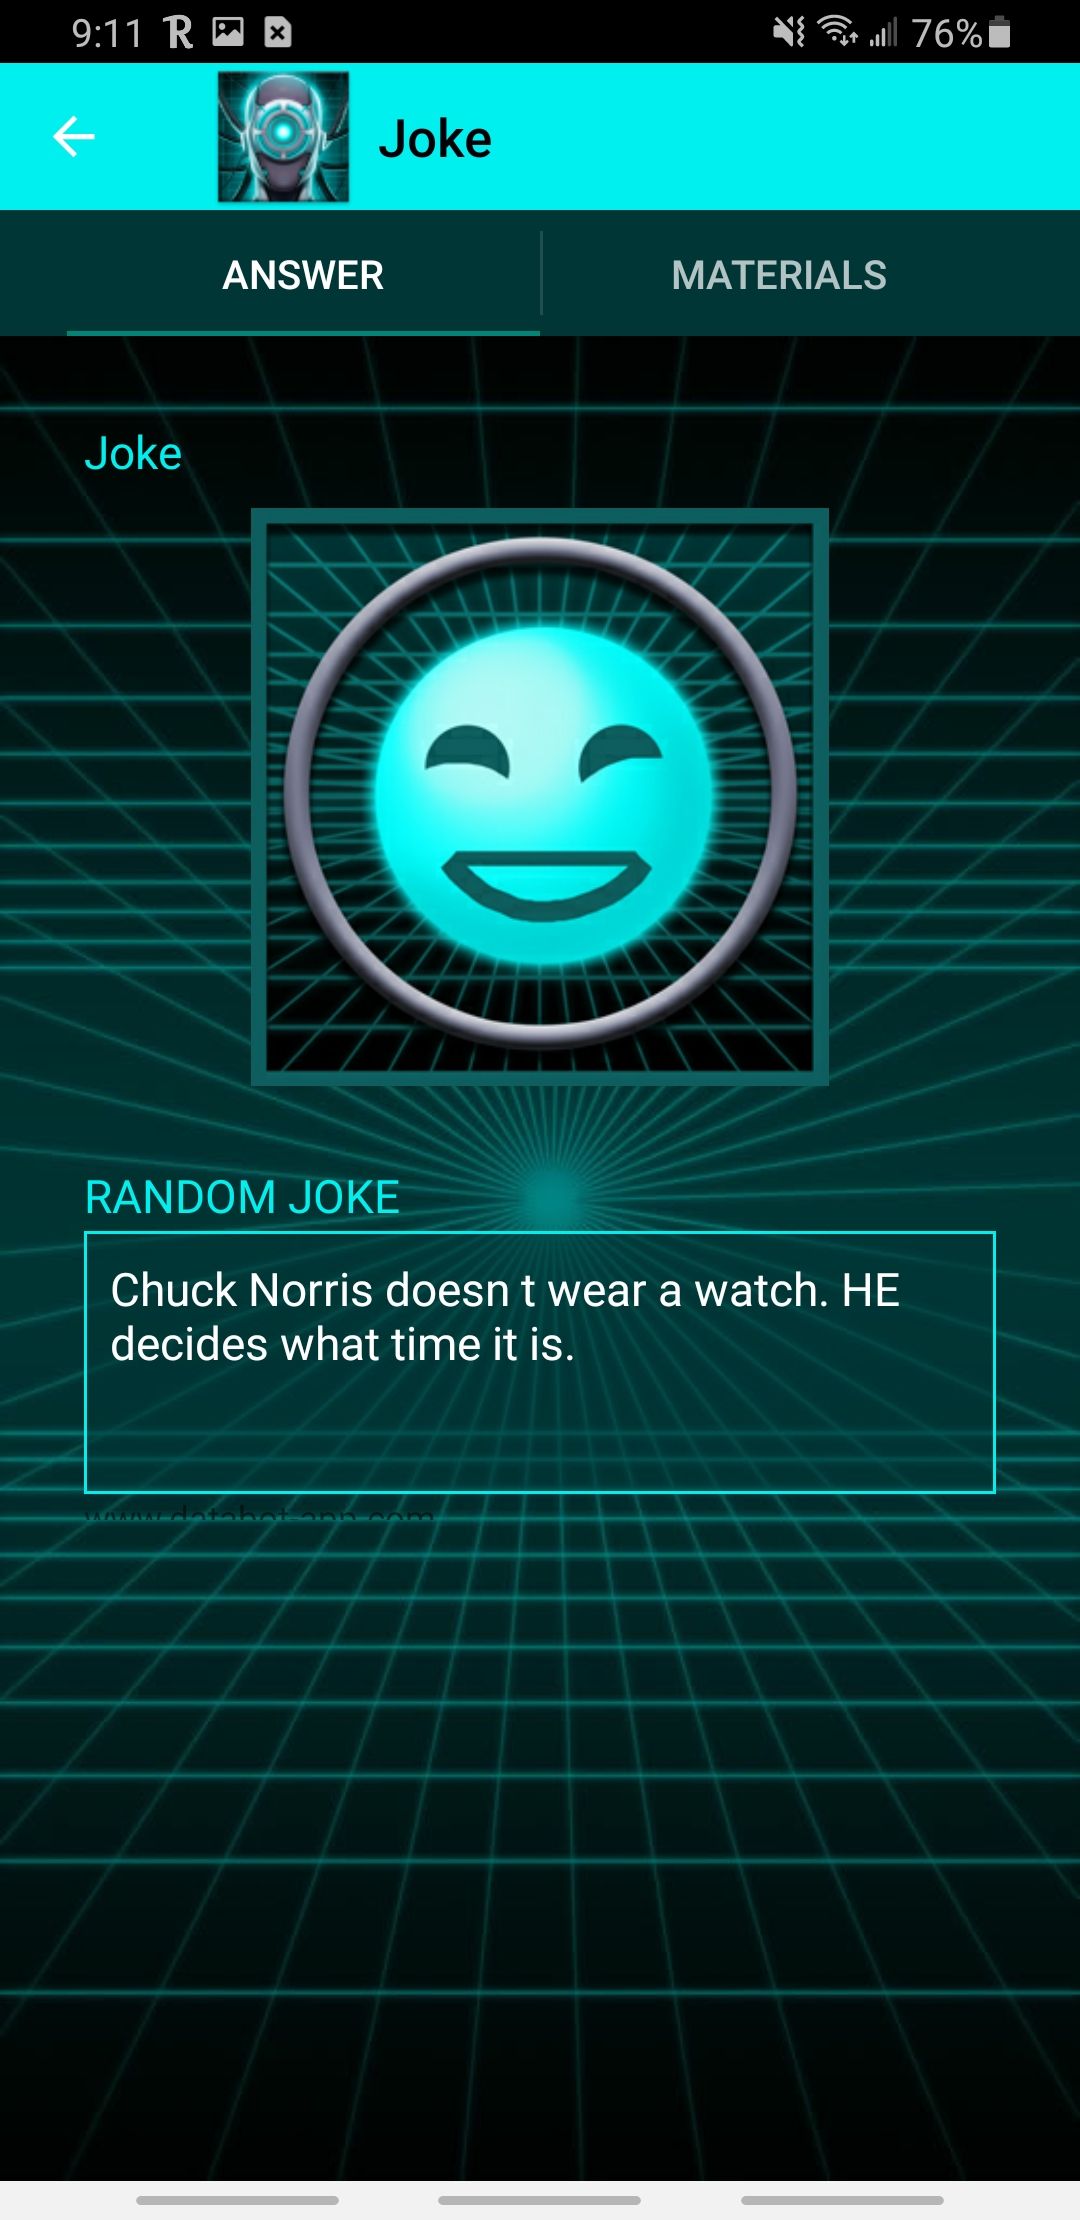 databot app telling a joke